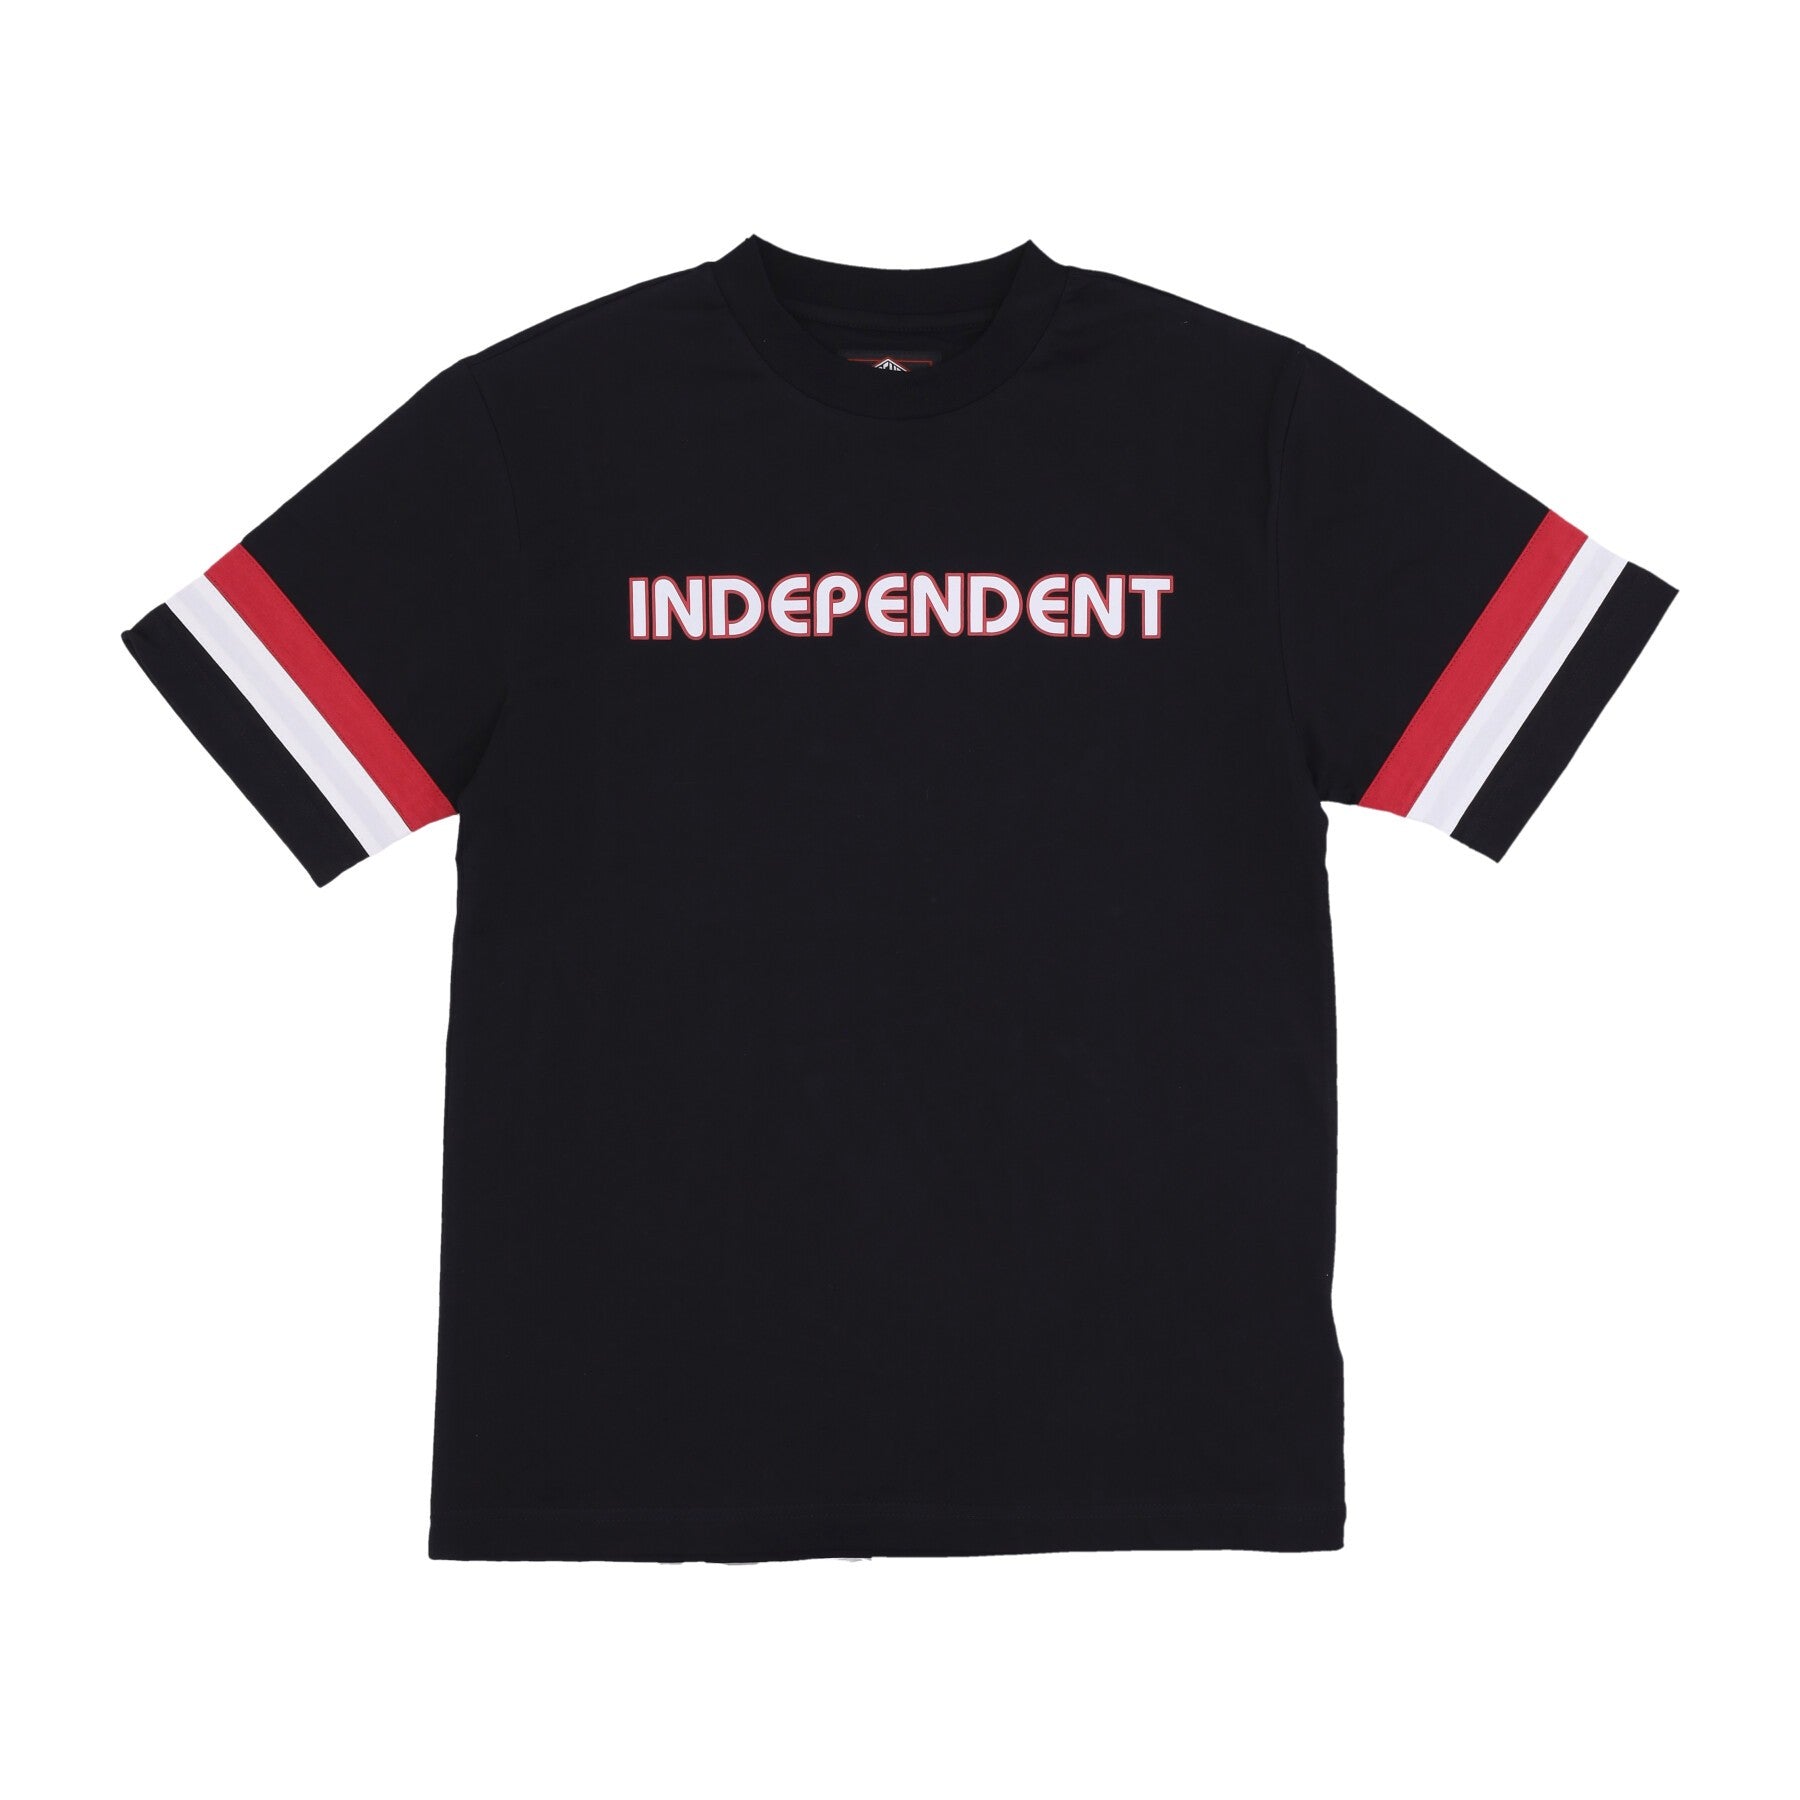 Independent, Maglietta Uomo Bauhaus Jersey, Black